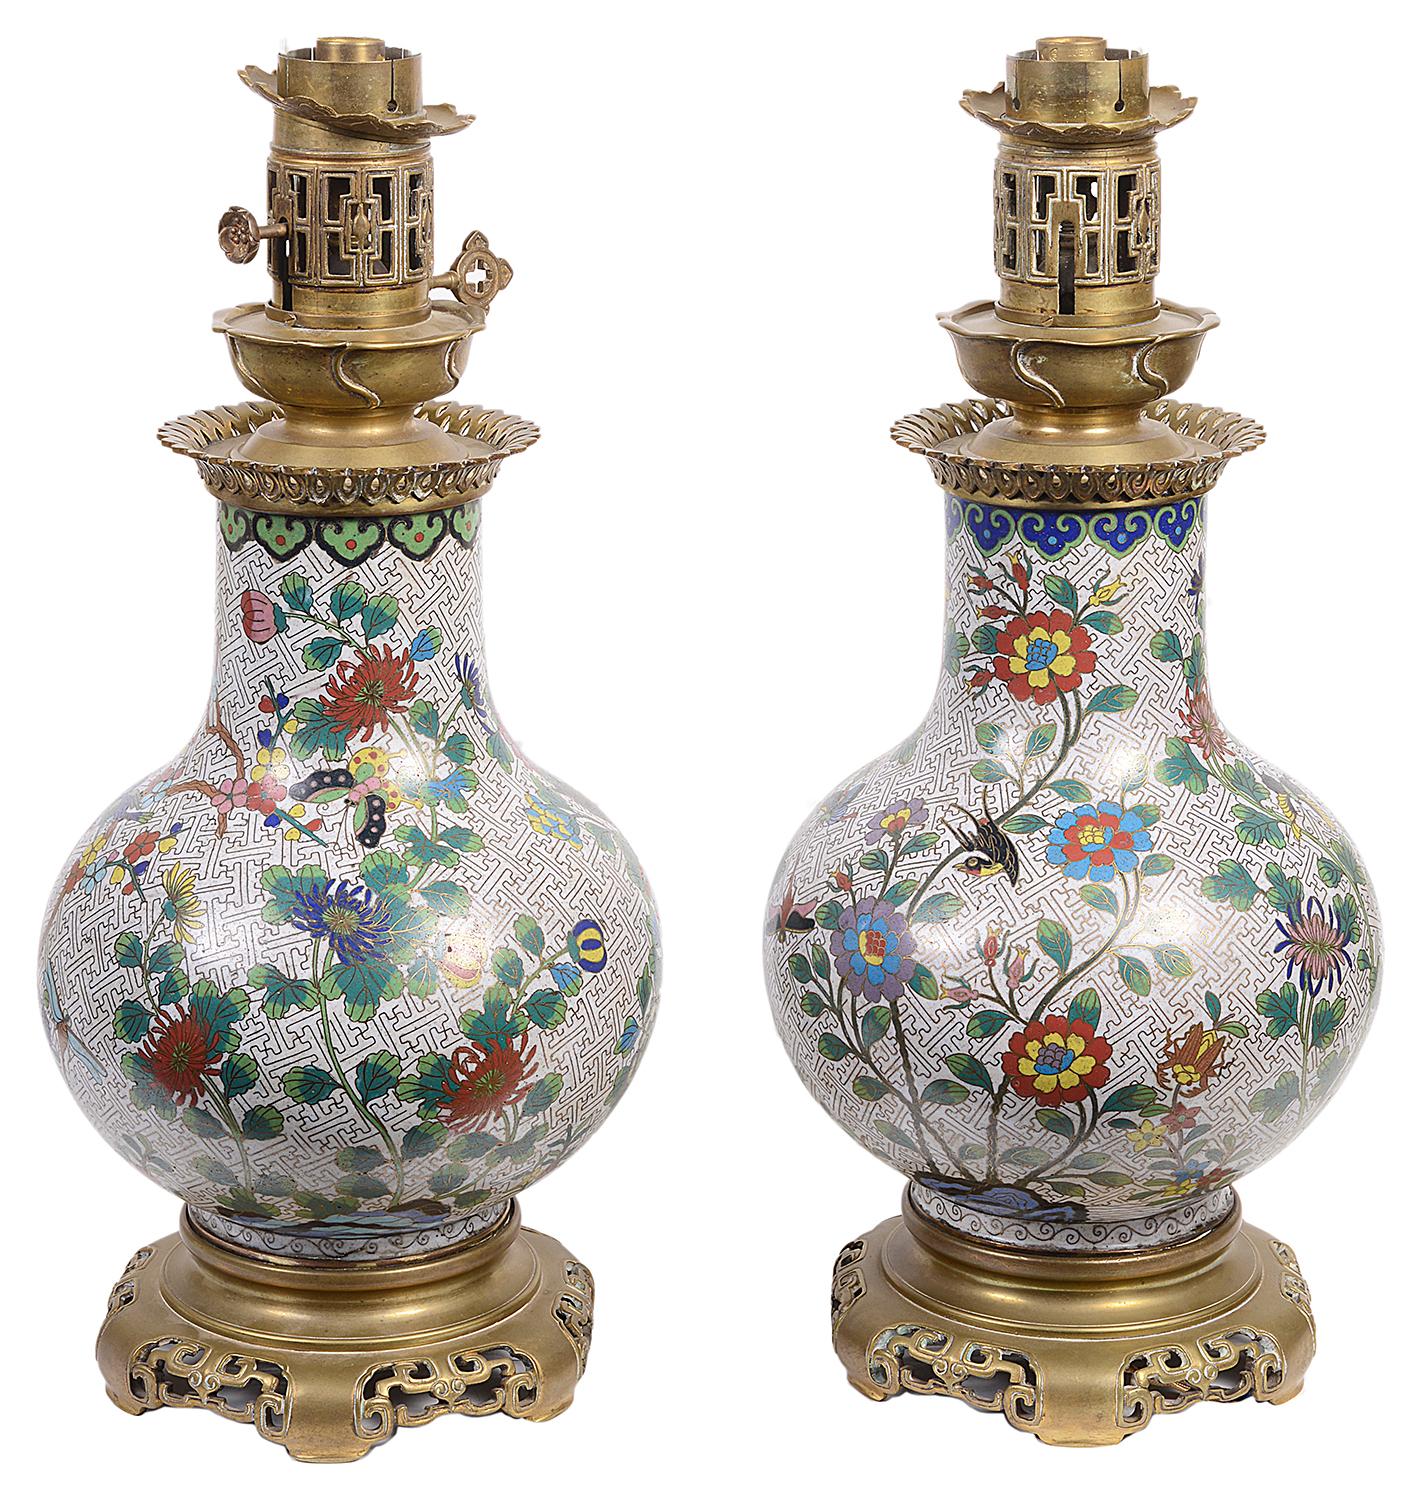 Une paire de vases / lampes en émail cloisonné de style oriental français de bonne qualité, chacun ayant une merveilleuse décoration florale avec des oiseaux, des papillons et des libellules, montés avec des dessus en bronze doré et des supports de